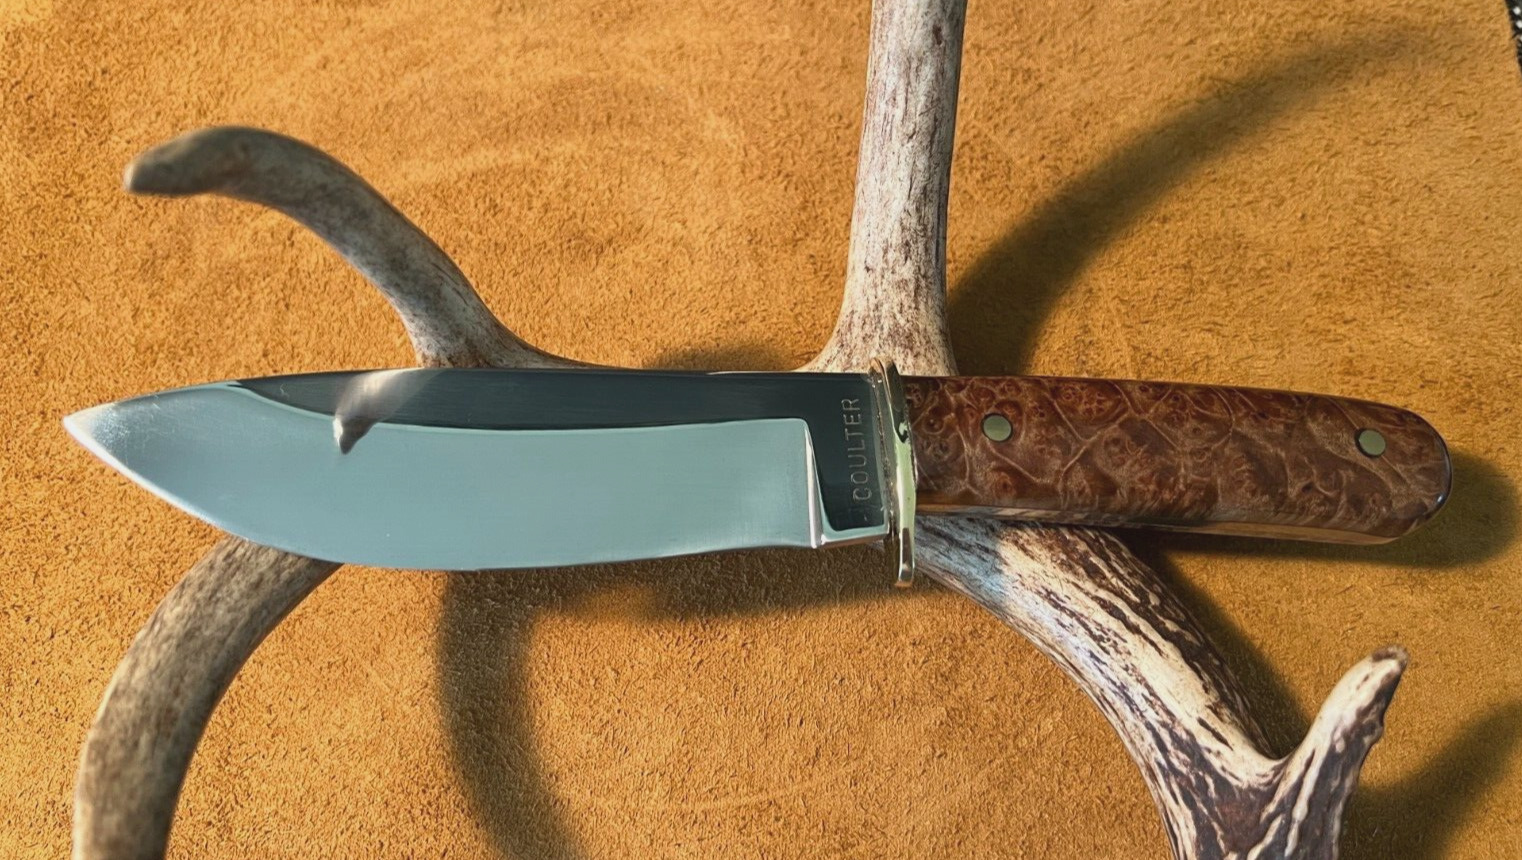 Custom Handmade Fixed Blade Hunting Knife With Sheath USA One of a Kind